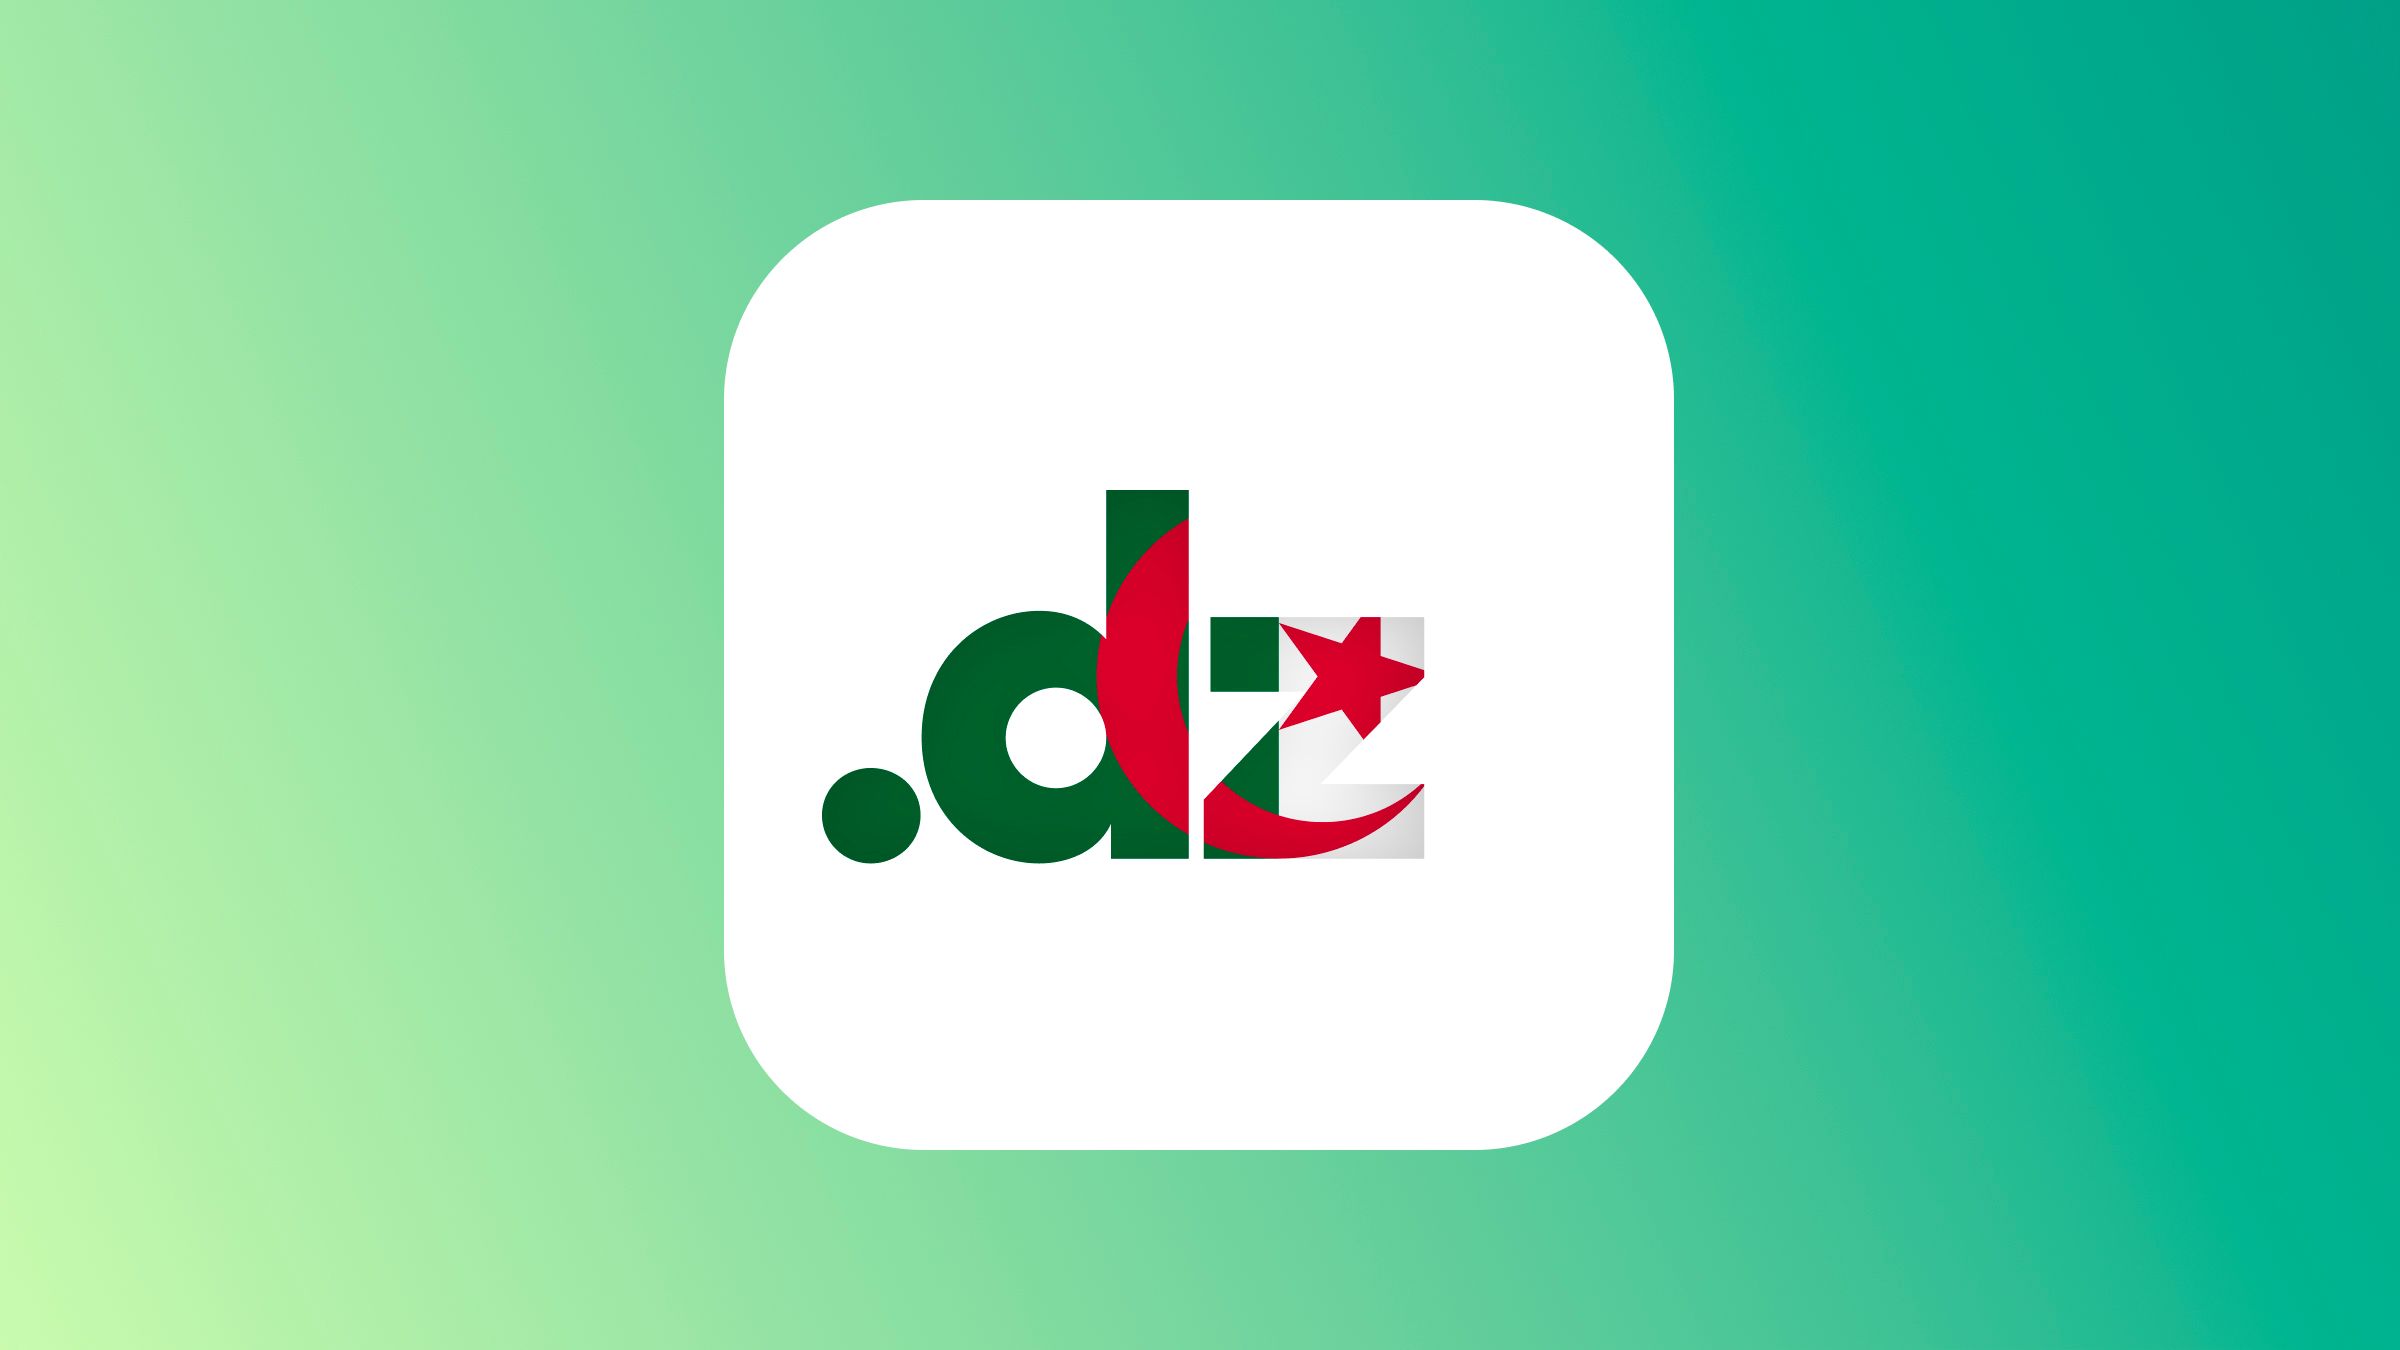 يجسد نطاق "dz." الهوية الرقمية للجزائر على الإنترنت، مما يضفي أهمية استراتيجية على المؤسسات والشركات والهيئات التي ترغب في تأكيد وجودها على الإنترنت تحت ألوان الجزائر.